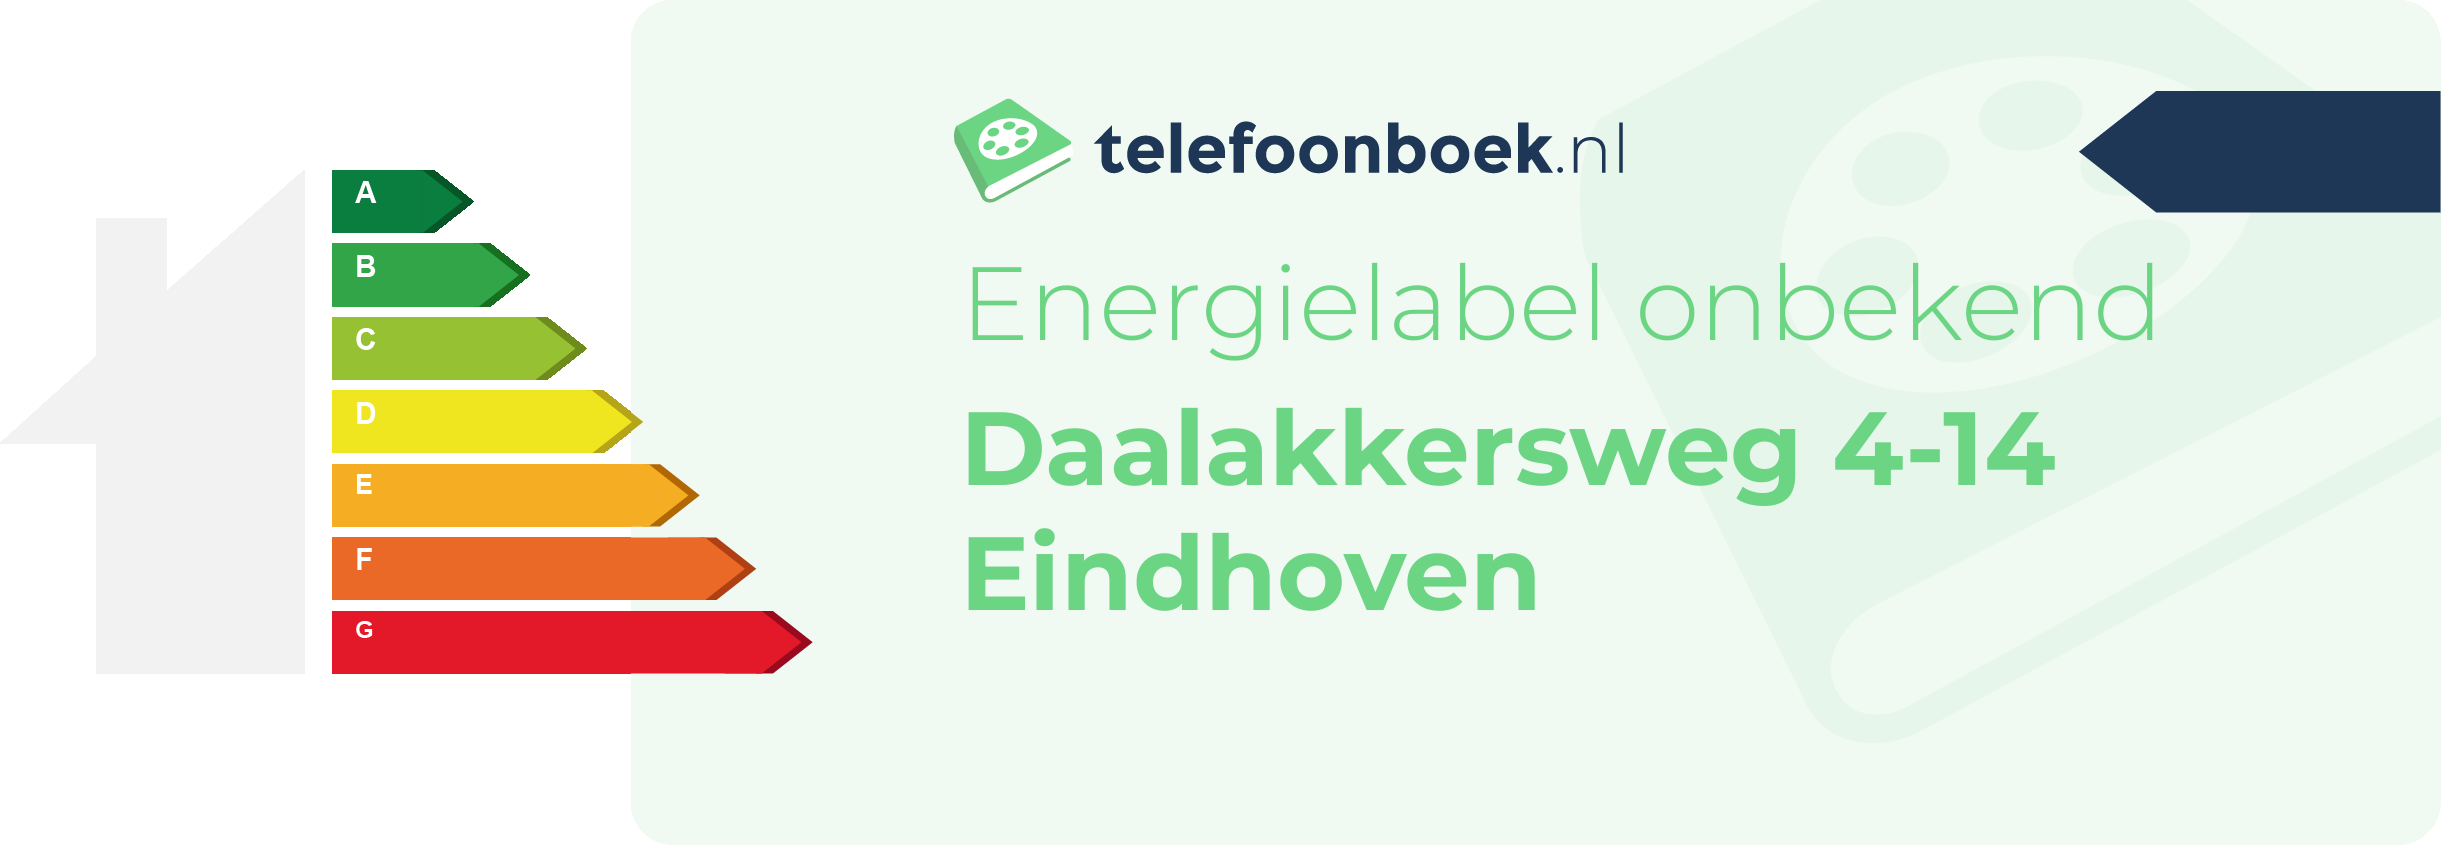 Energielabel Daalakkersweg 4-14 Eindhoven